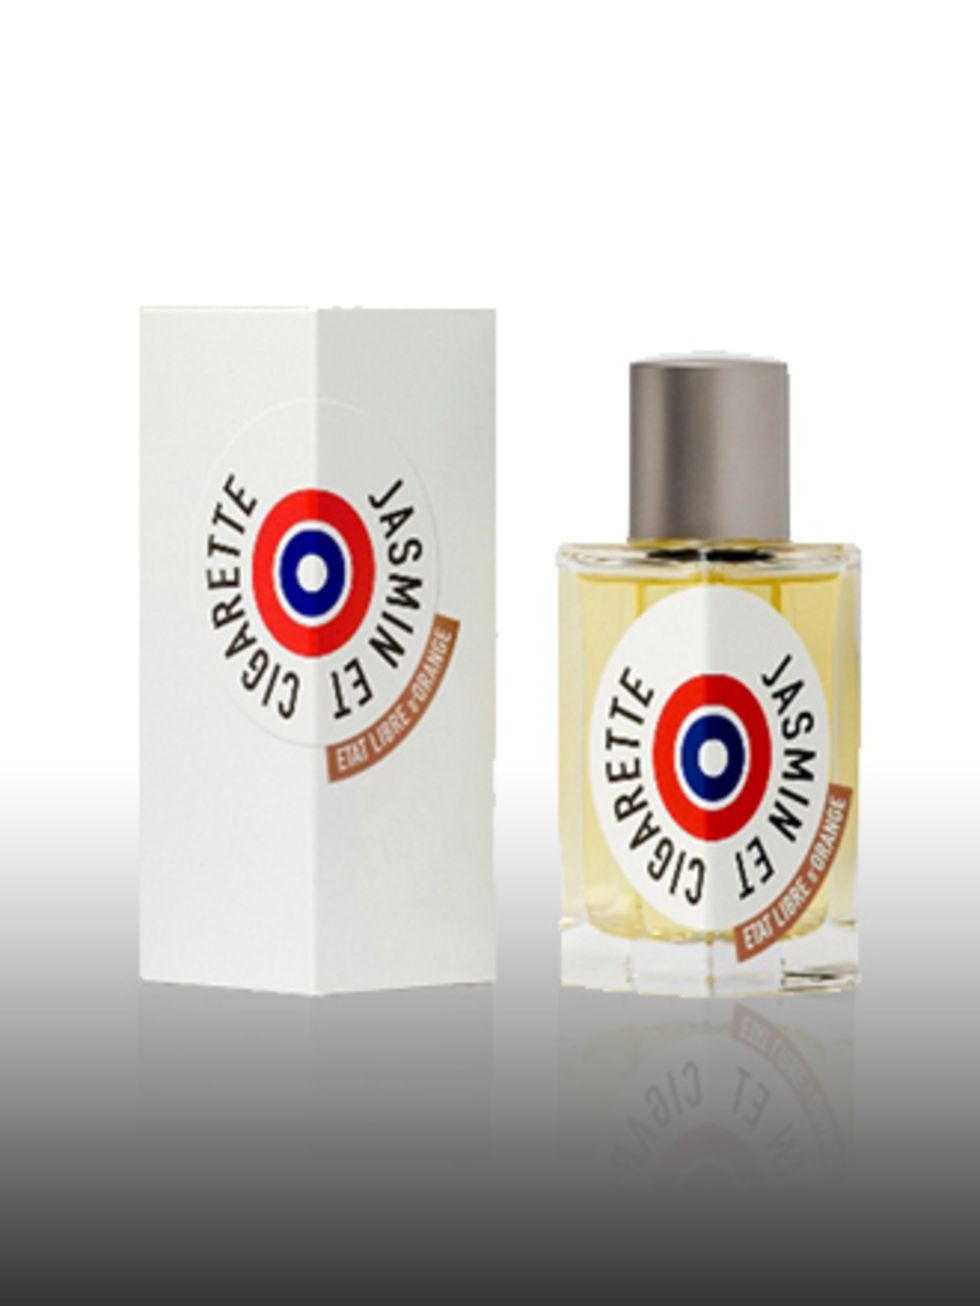 <p>Jasmine et Cigarette, £38 by Etat Libre d'Orange. Available at <a href="http://www.lessenteurs.com/">Les Senteurs</a>.</p><p>Etat Libre dOrange, meaning the free state of orange, is an unconventional perfumery that specialises in niche, avant-garde fr